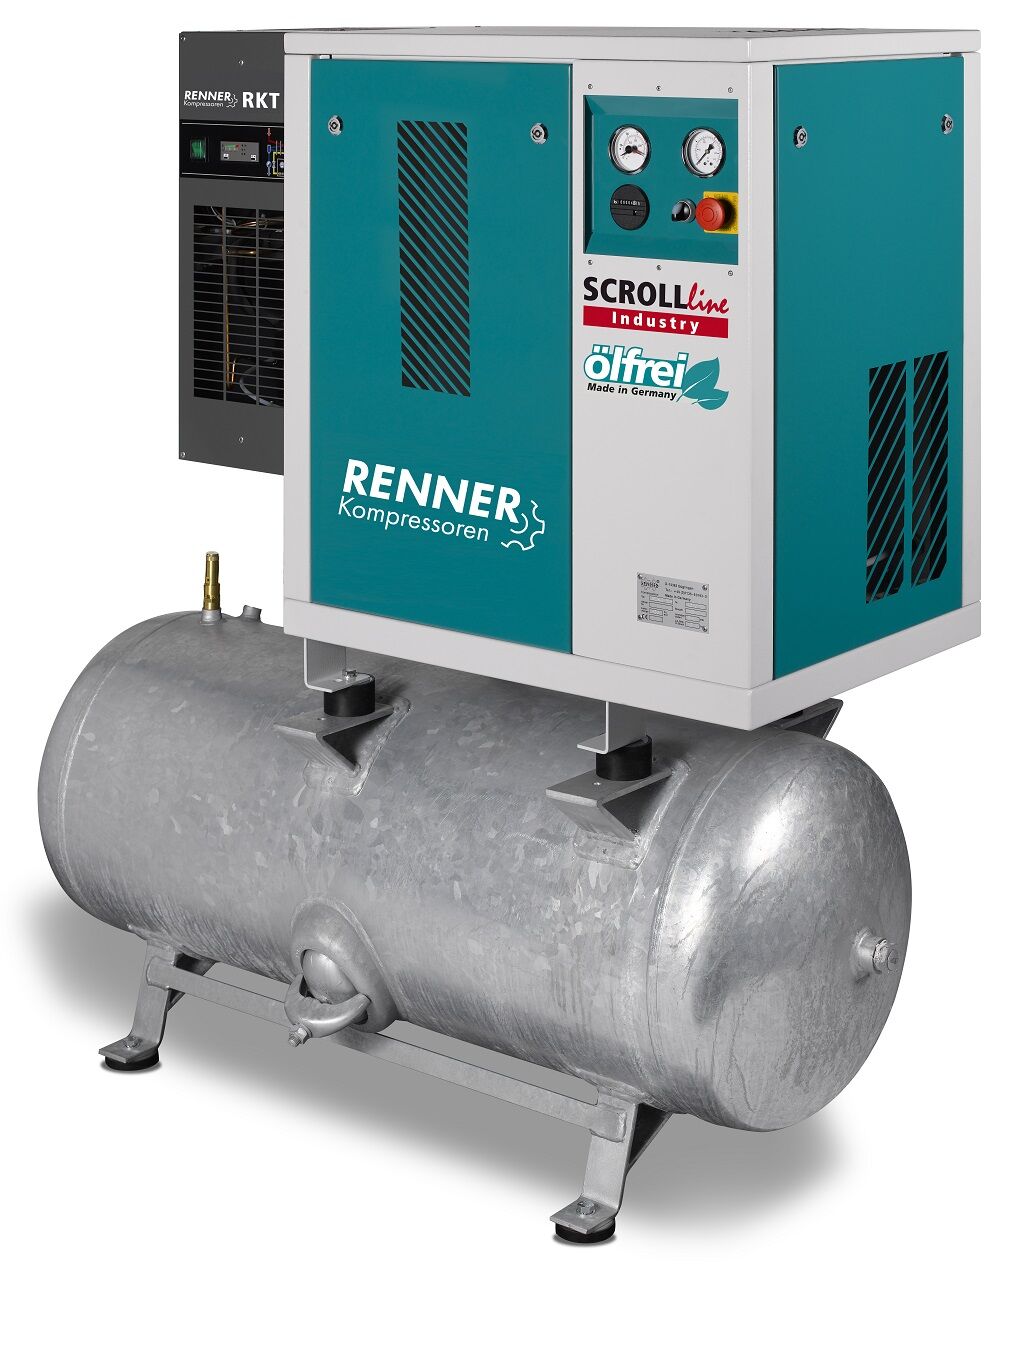 RENNER-Kompressor Industry ölfrei - SLDK-I 1,5 auf 90 Liter Druckbehälter mit Kältetrockner